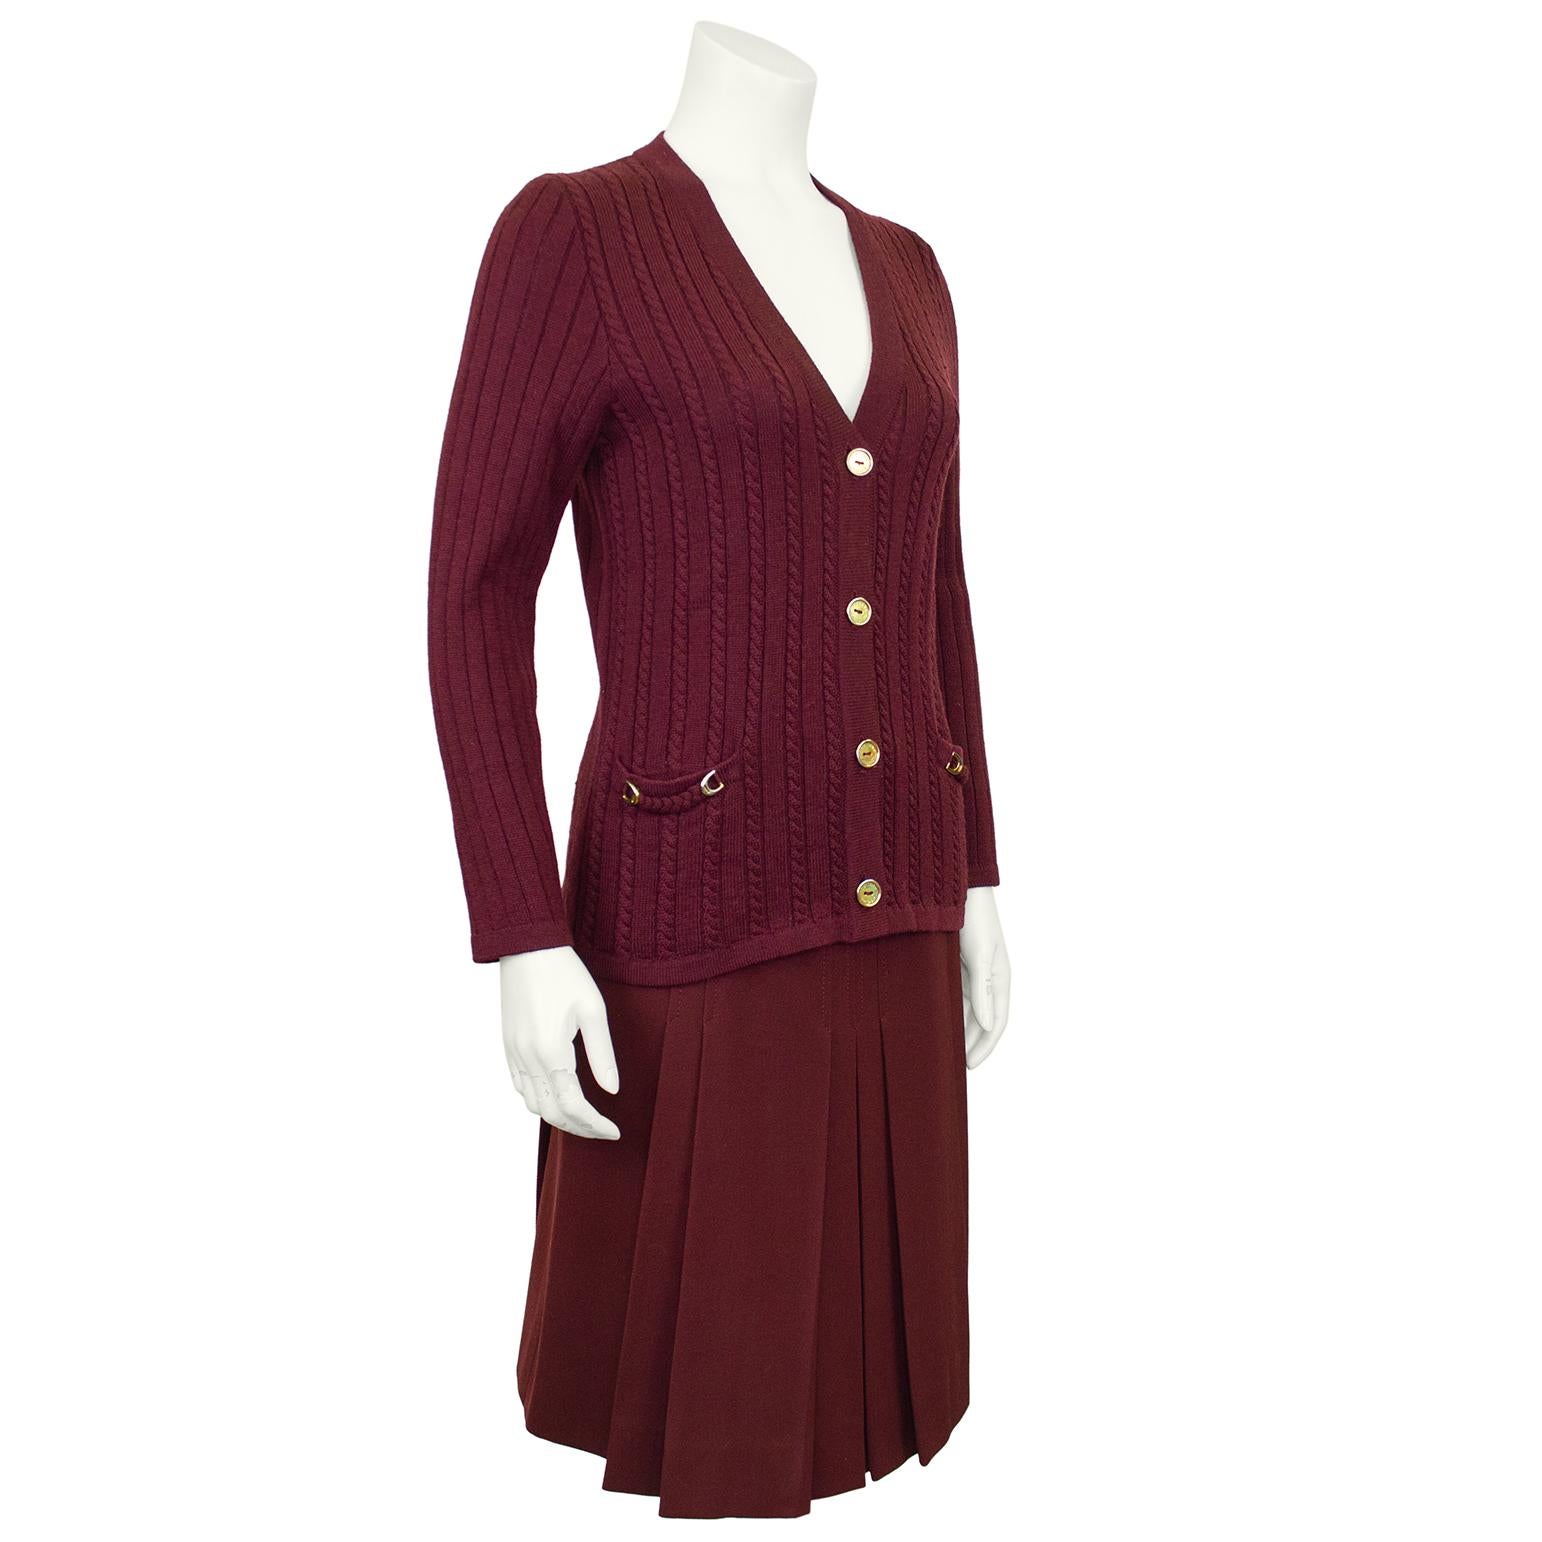 Ensemble des années 1970 composé d'un cardigan marron 100 % laine et d'une jupe en gabardine assortie, de la marque Celine. L'ensemble comprend un cardigan en tricot câblé avec des bordures tressées au niveau des poches et des détails de sabots de